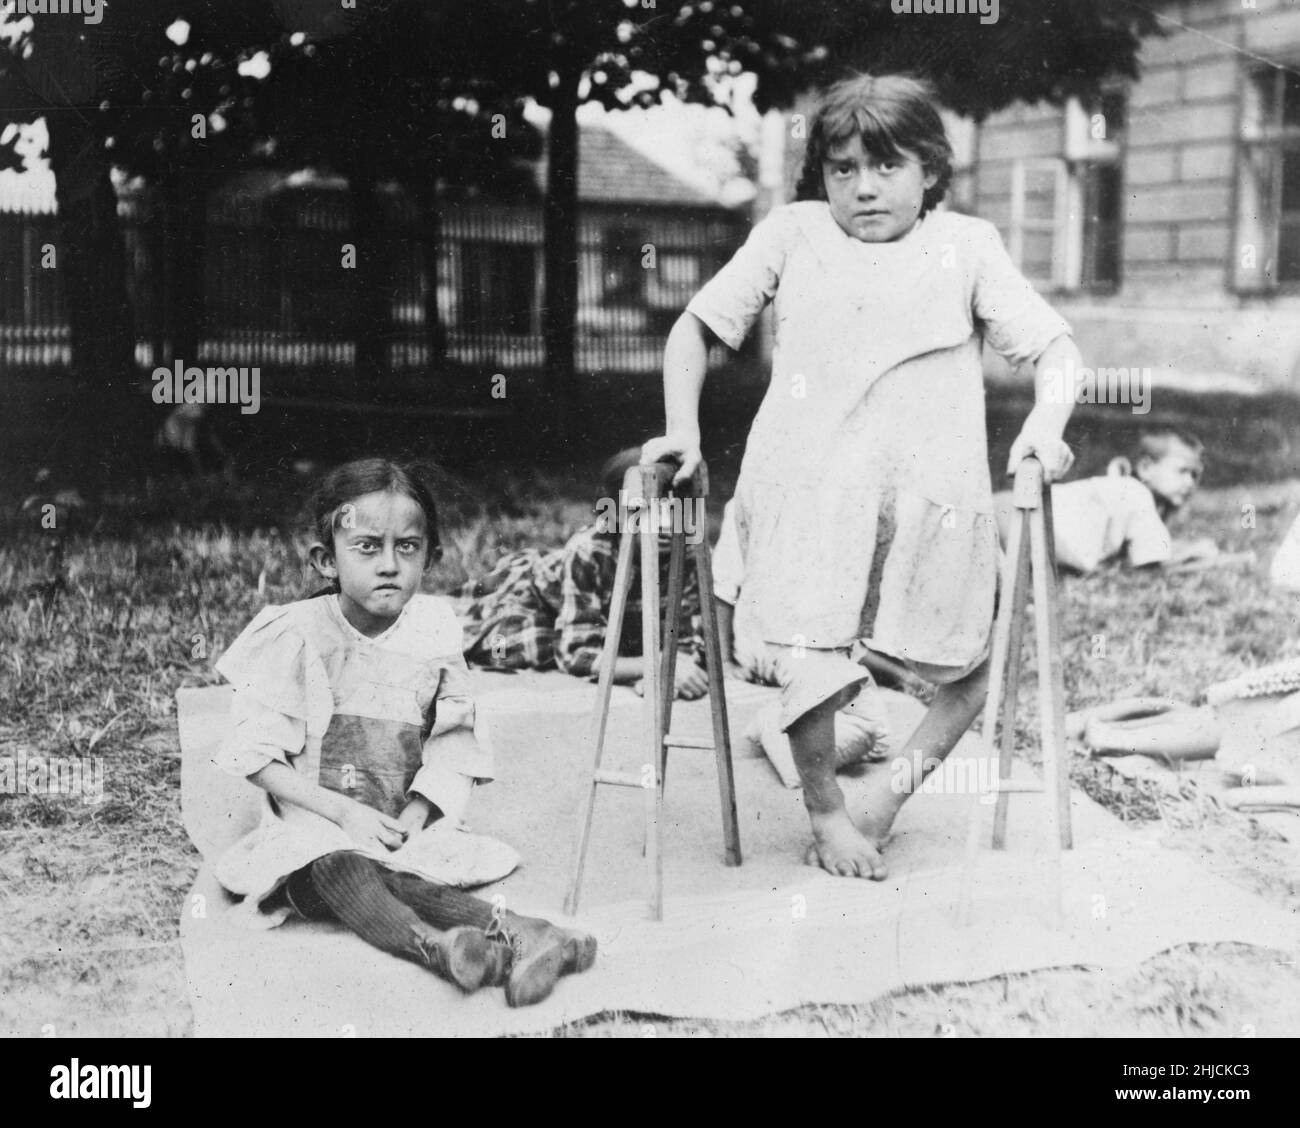 Rechts ist ein Mädchen, das durch Tuberkulose gelähmt ist, die durch Unterernährung verursacht wird; links ist ein fast blindes Mädchen, das nicht gehen kann. Europa, 1919. Stockfoto